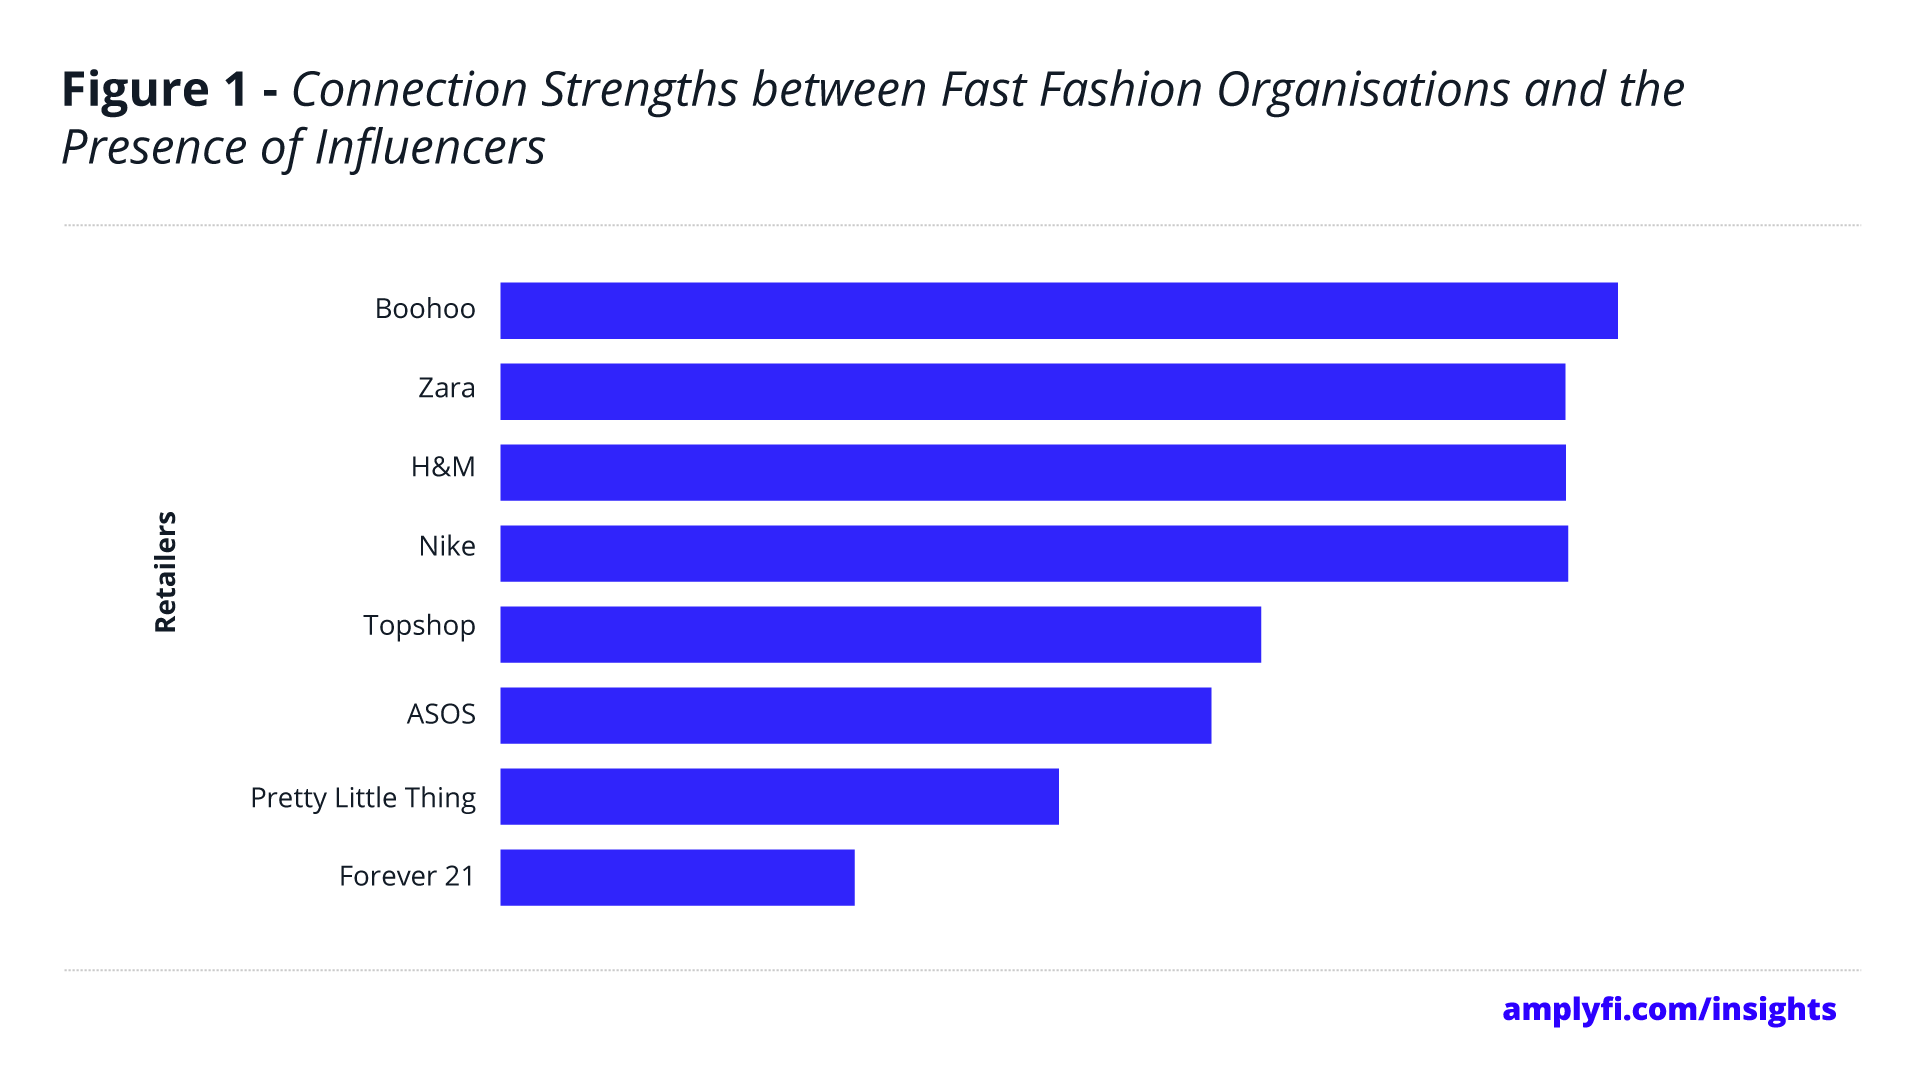 Figura que muestra las fortalezas de conexión entre las organizaciones de moda rápida y la presencia de personas influyentes